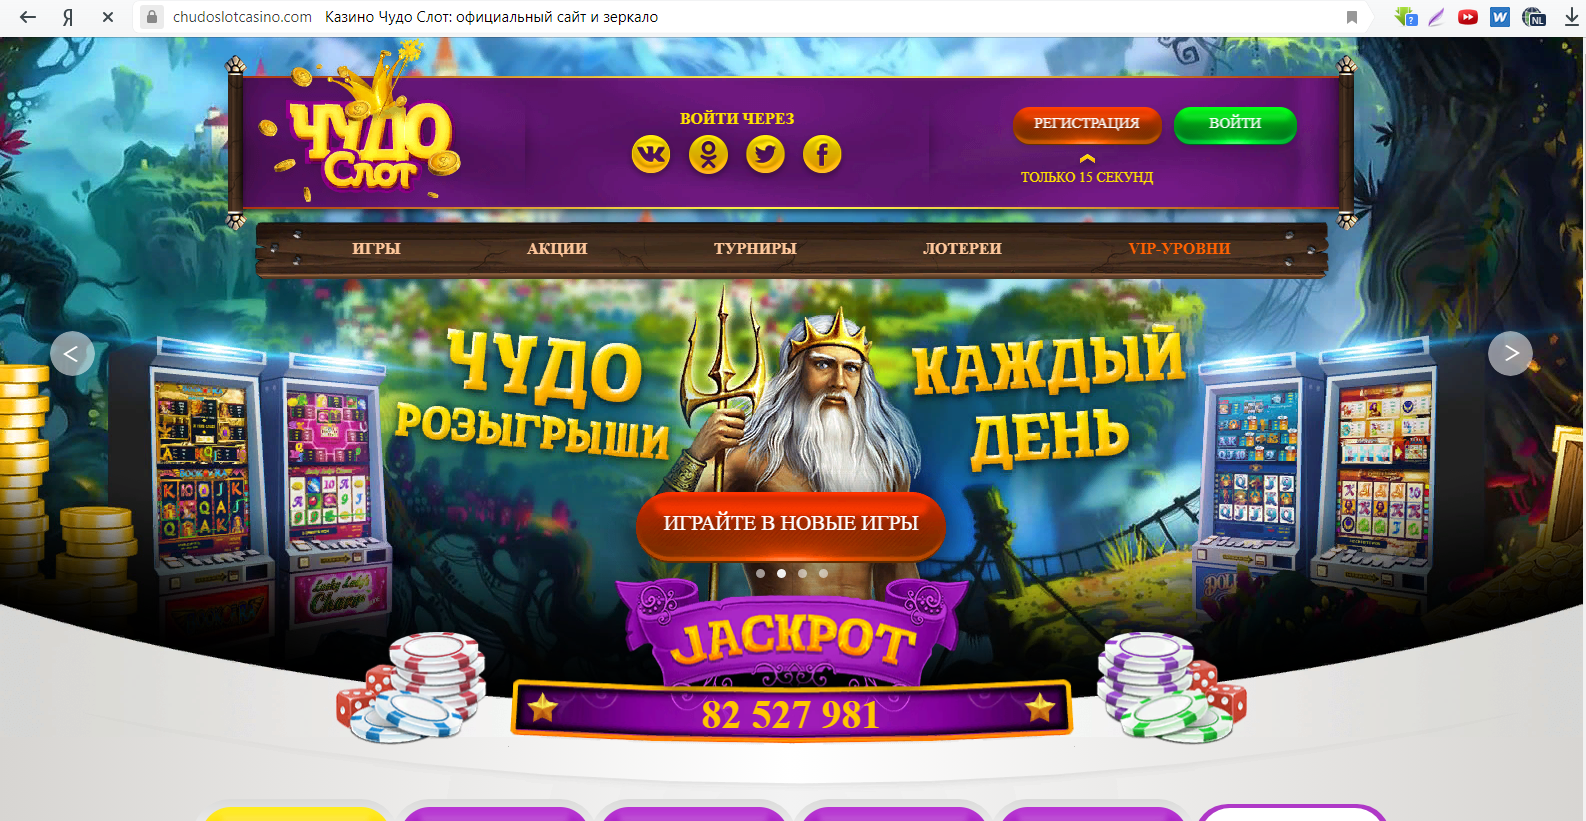 игровые автоматы с первым депозитом 300 рублей